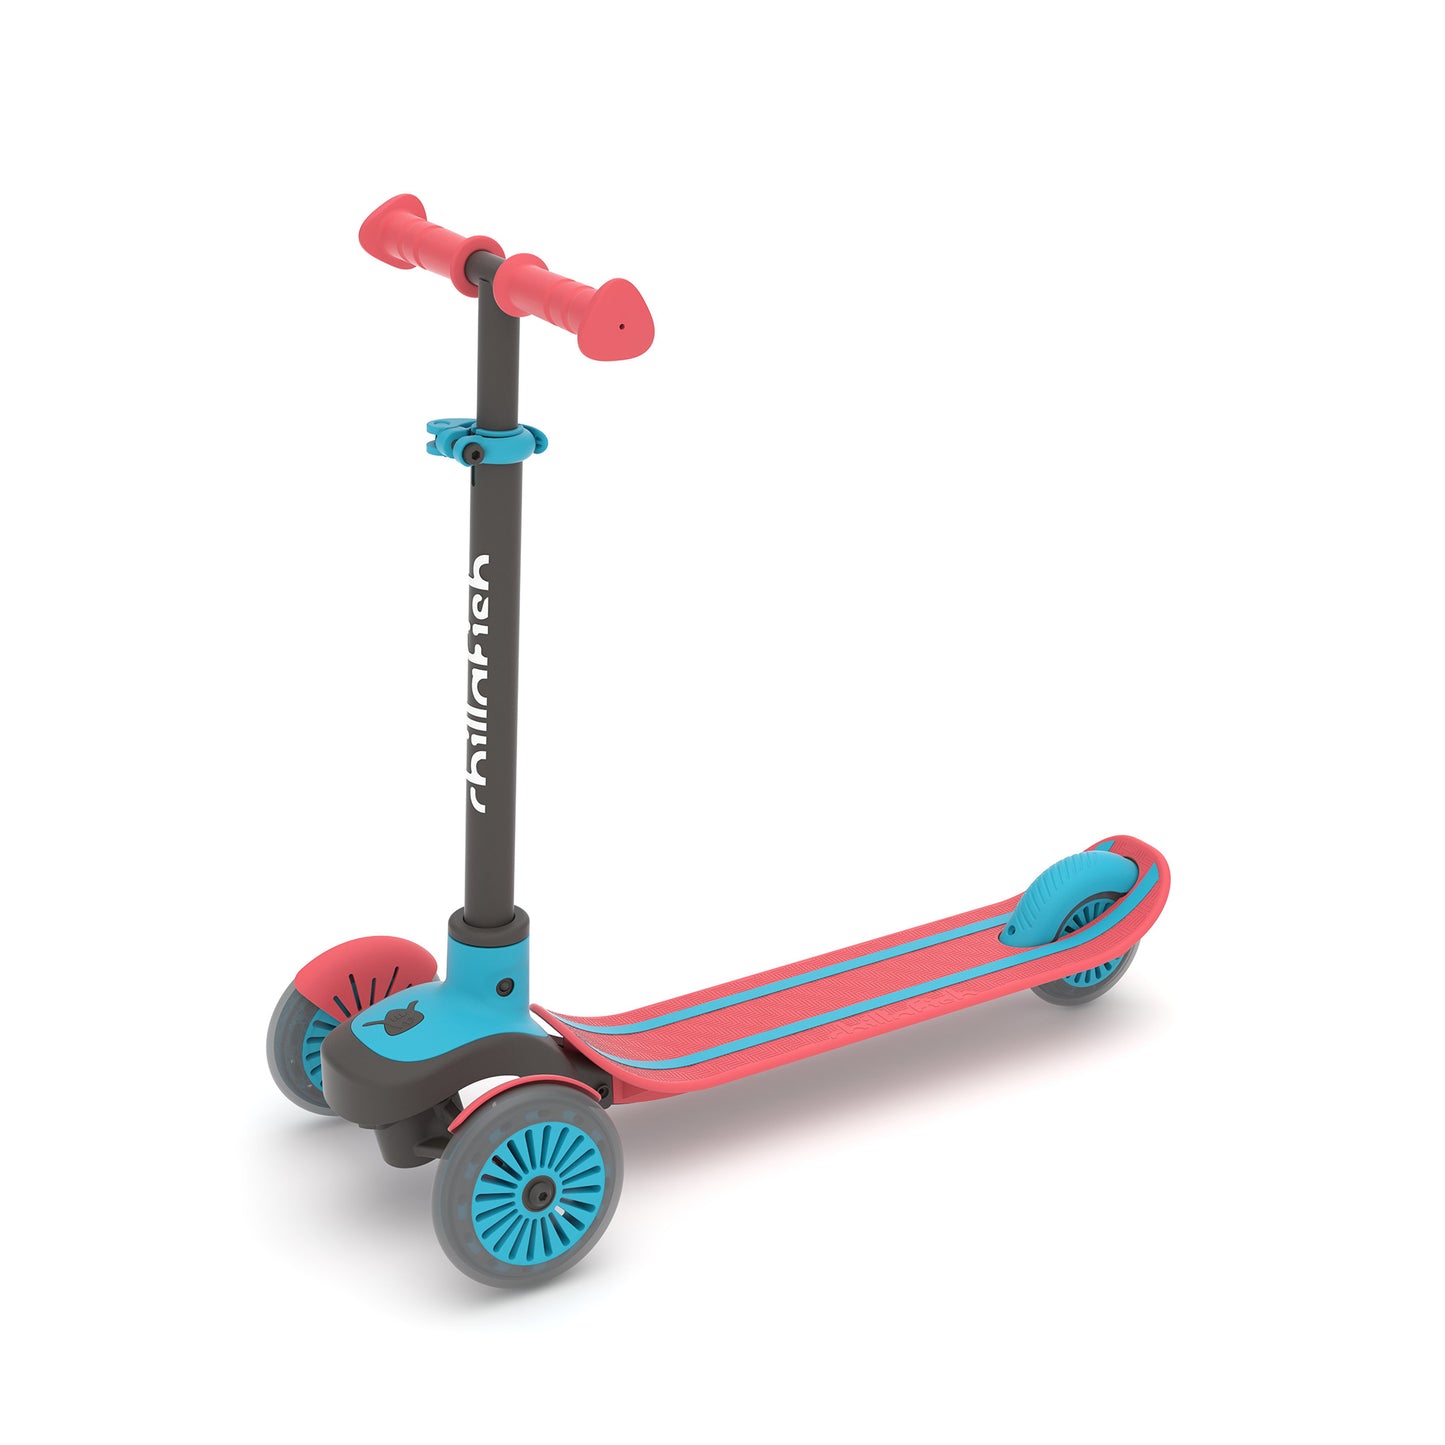 Trottinette 3 roues SCOTTI à incliner pour changer de direction, avec plateau antidérapant en forme de skateboard, frein arrière intégré, et guidon ajustable en hauteur, à partir de 3 ans